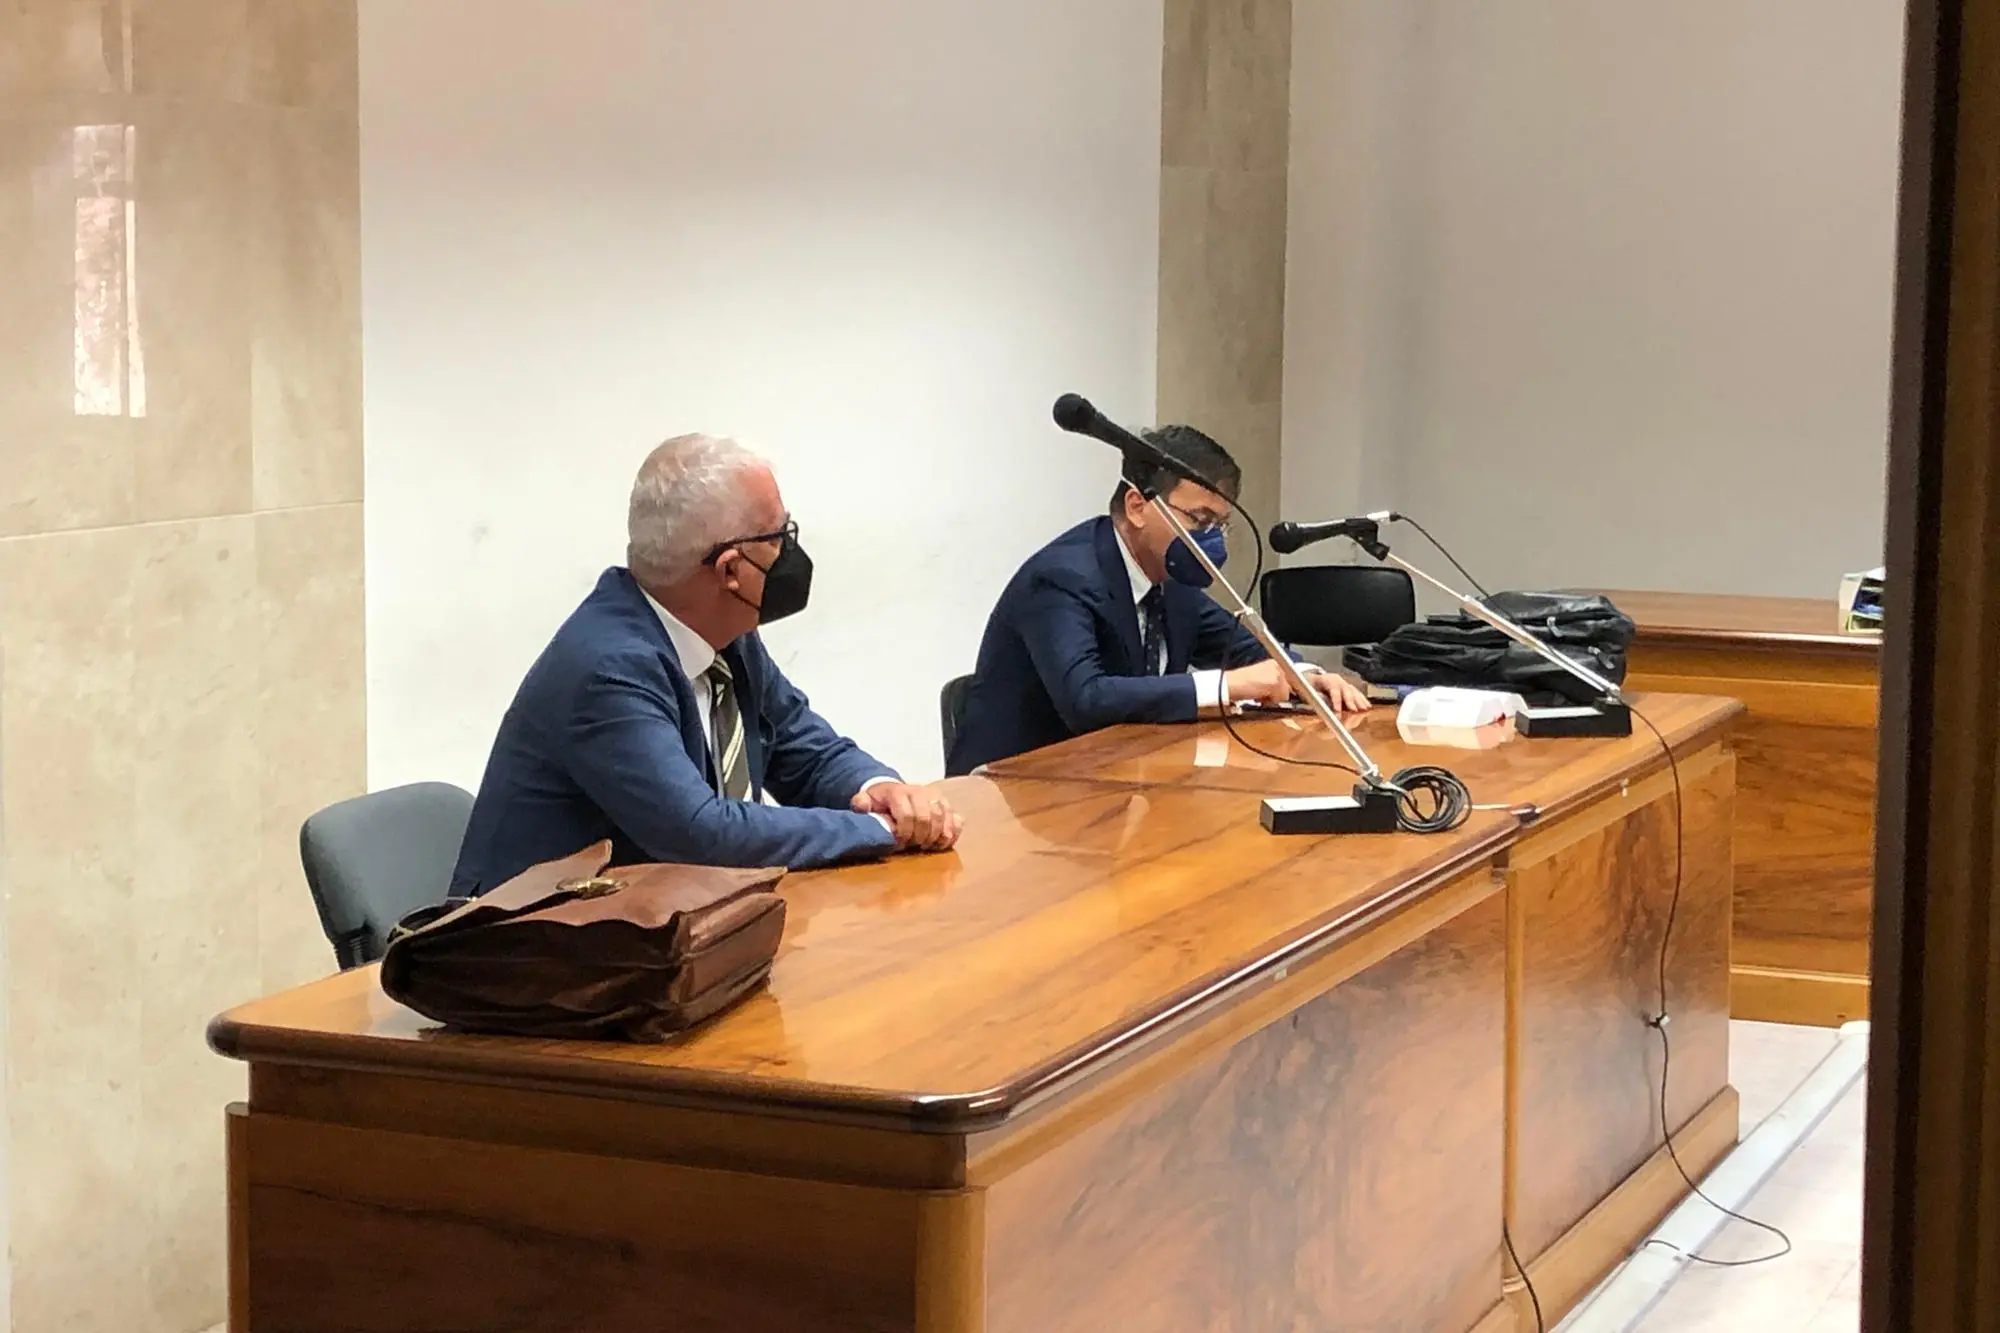 L'avvocat Salvatore Casula e l'avvocato Massimiliano Ravenna (Foto Manunza)